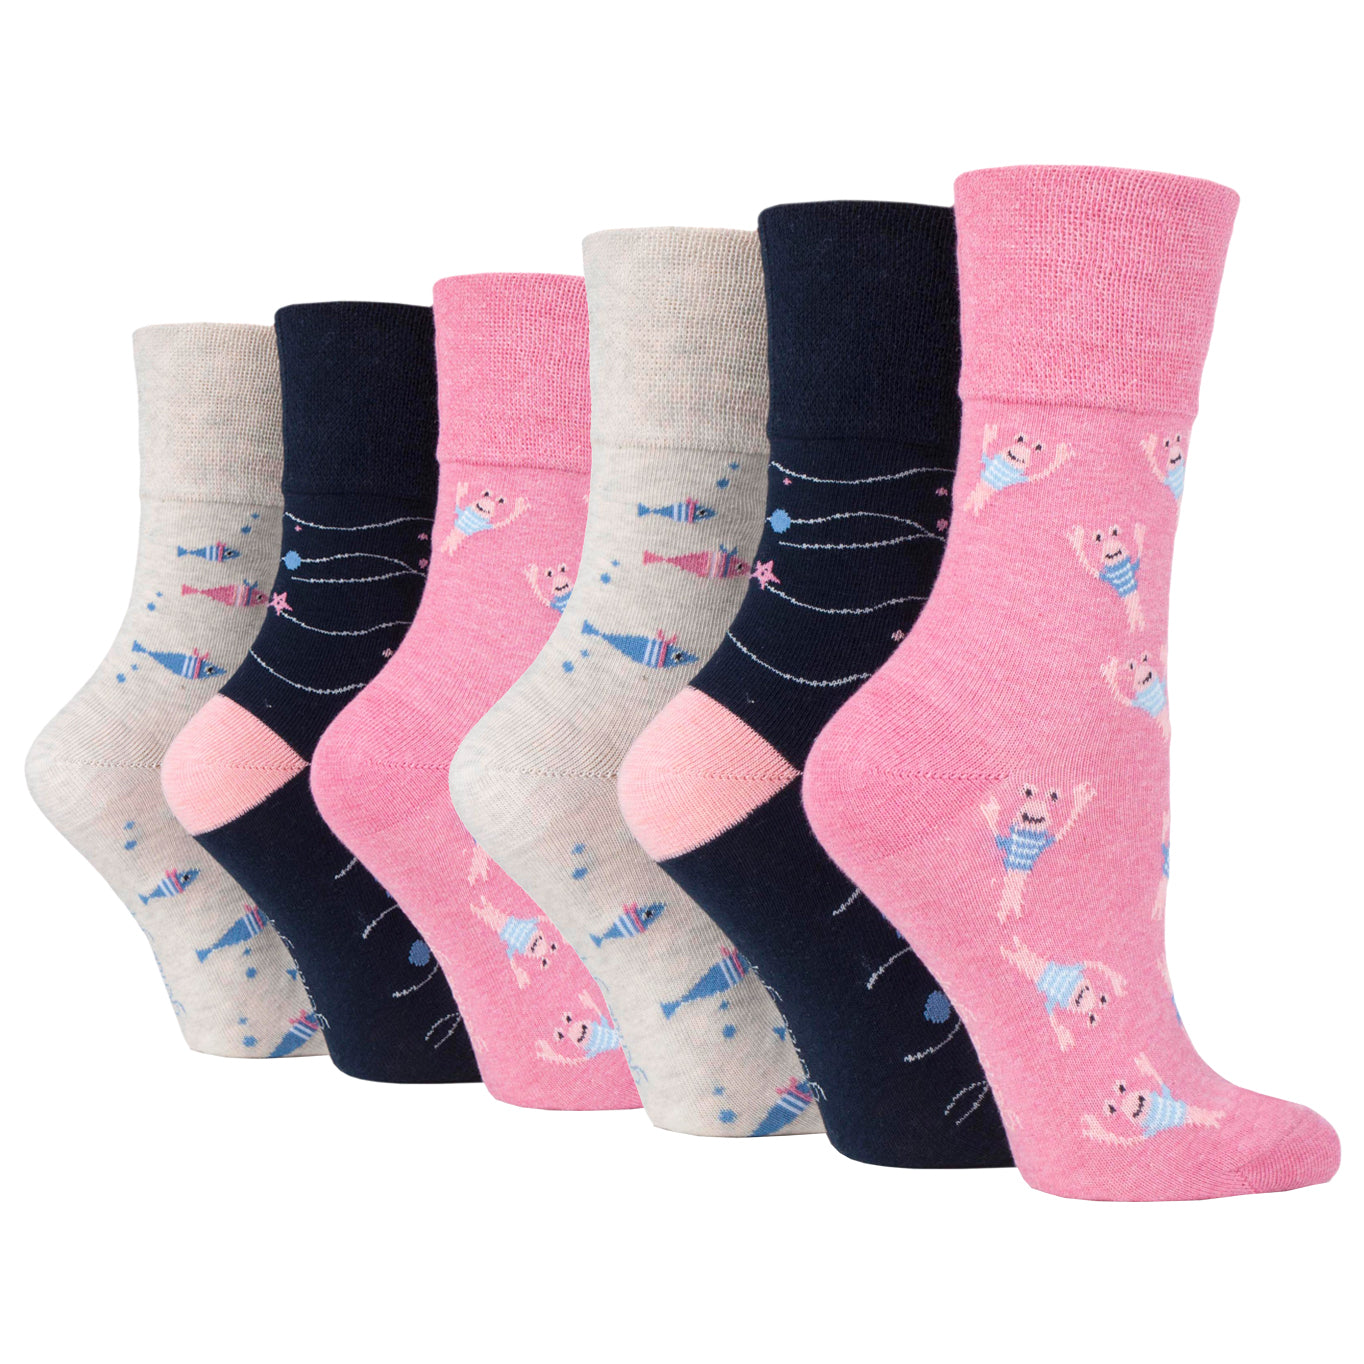 6 Pairs Ladies Gentle Grip Cotton Socks Fun Feet Seabed